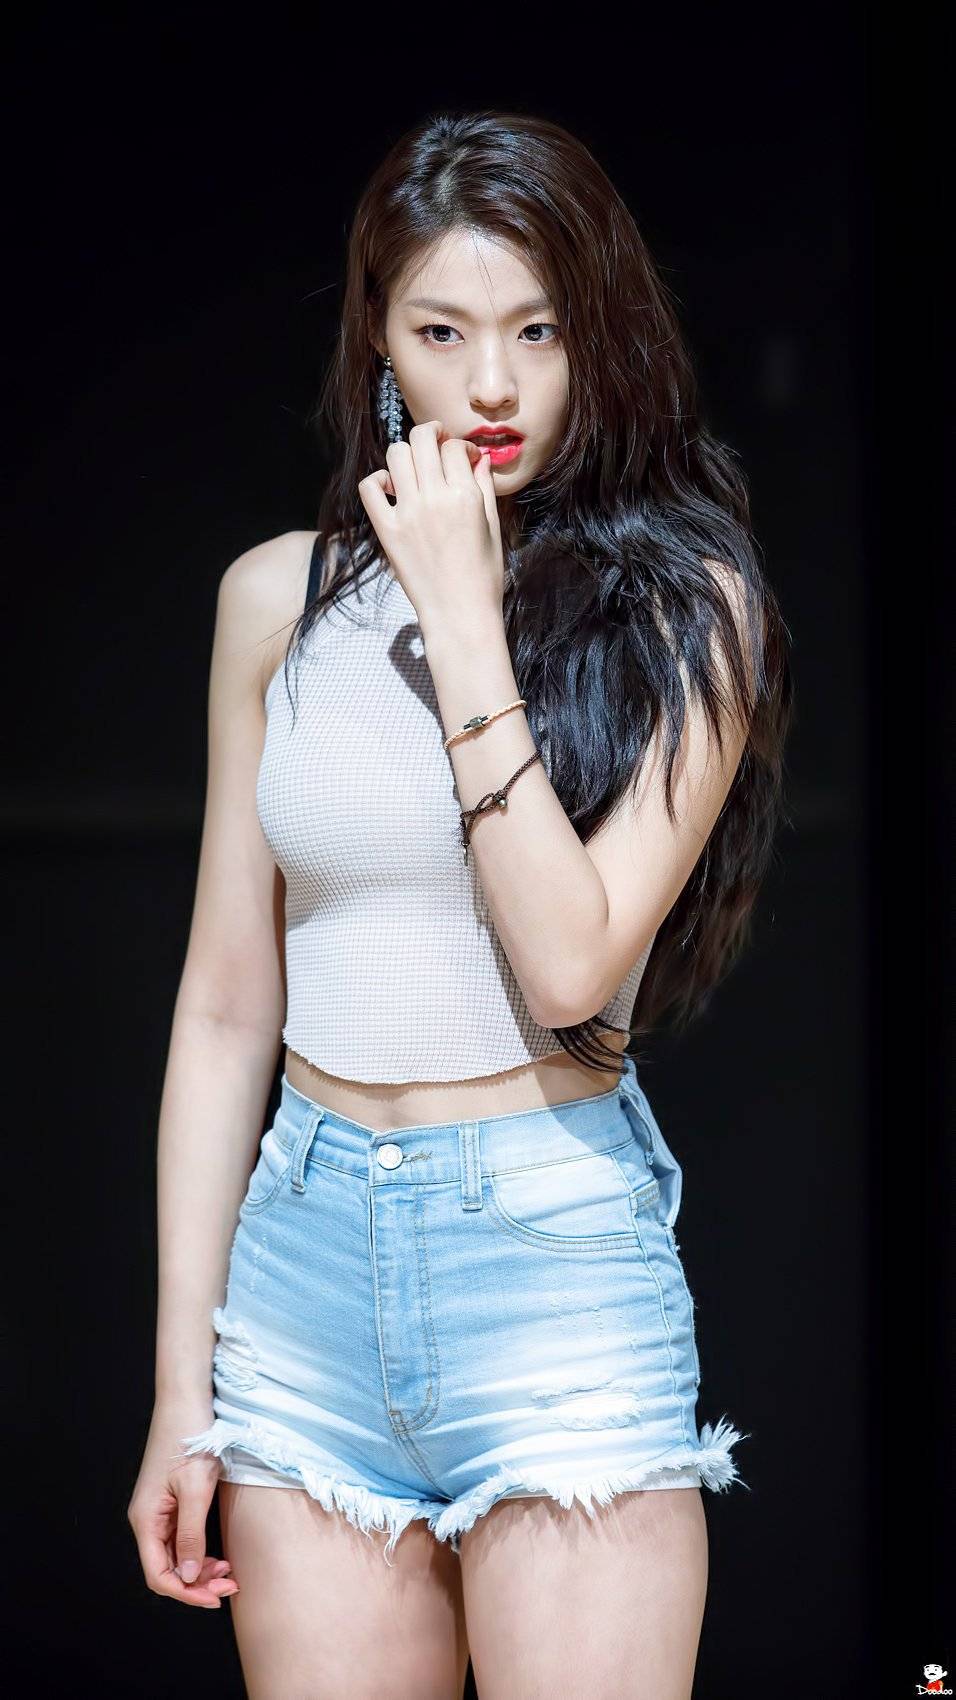 Seol hyun hot